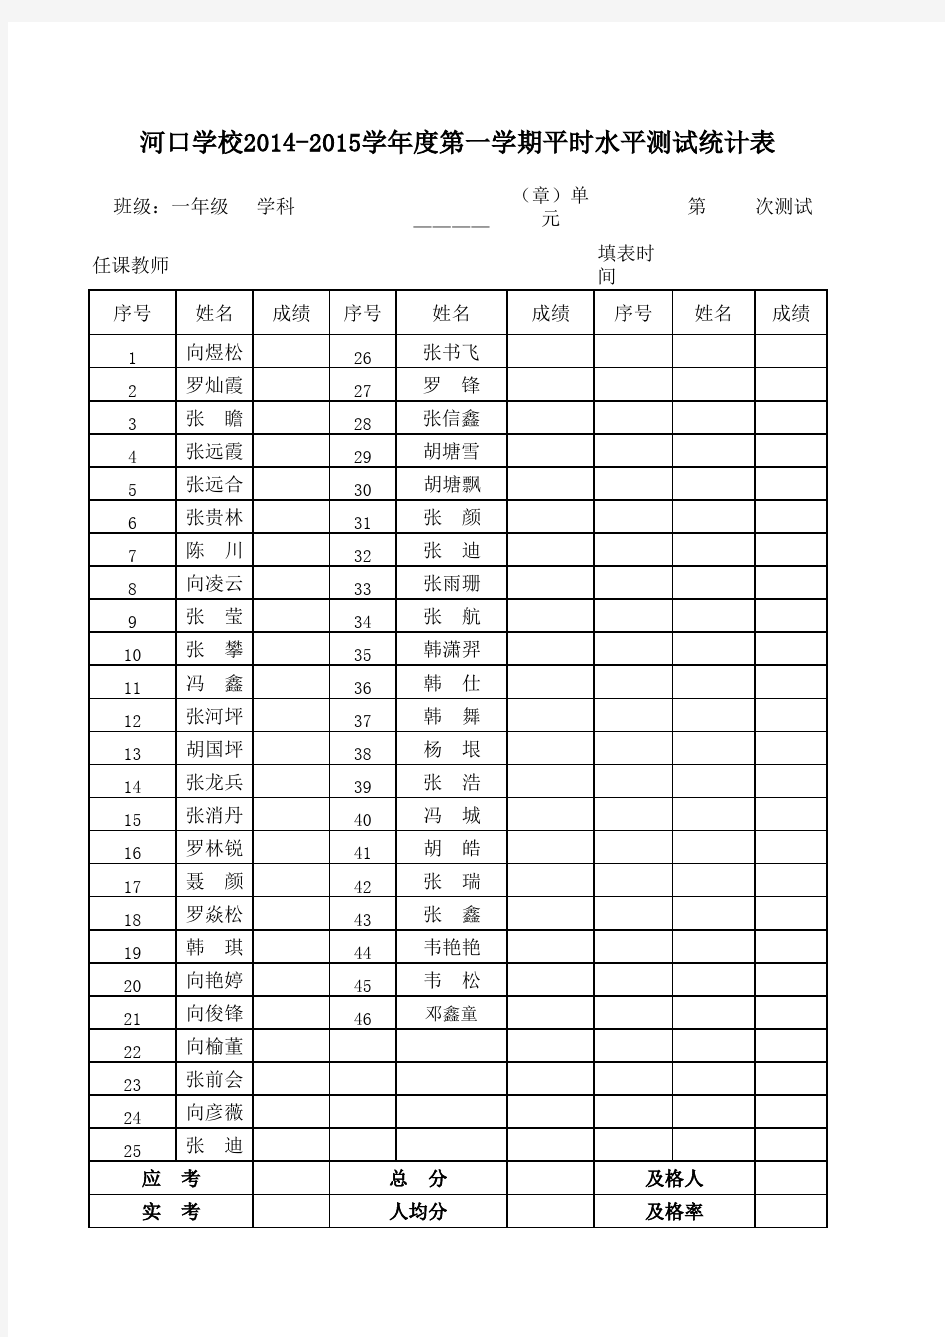 各班成绩统计表(1)